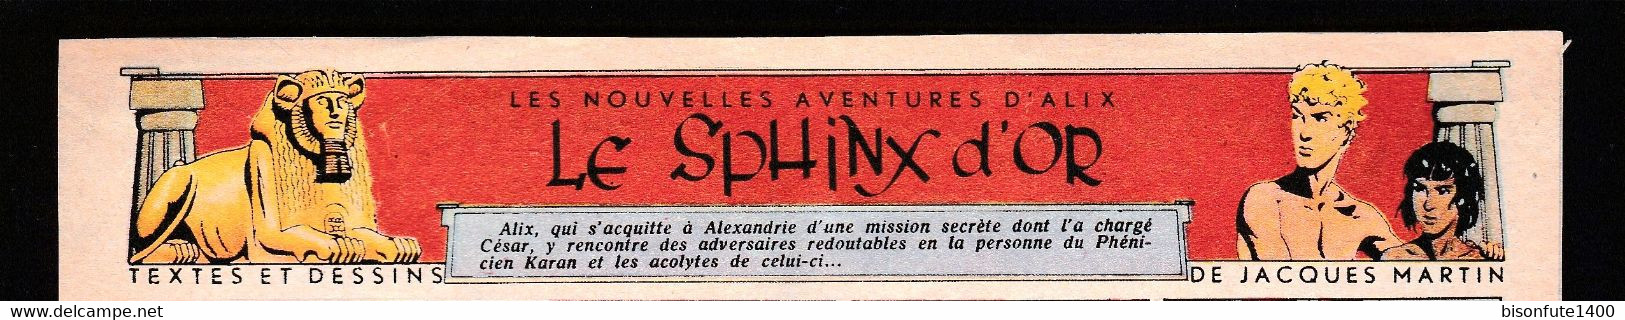 Bandeau Titre De Alix "Le Sphinx D'Or" Datant De 1950 Et Inédit Dans Les Bandes Dessinées En Album. - Alix